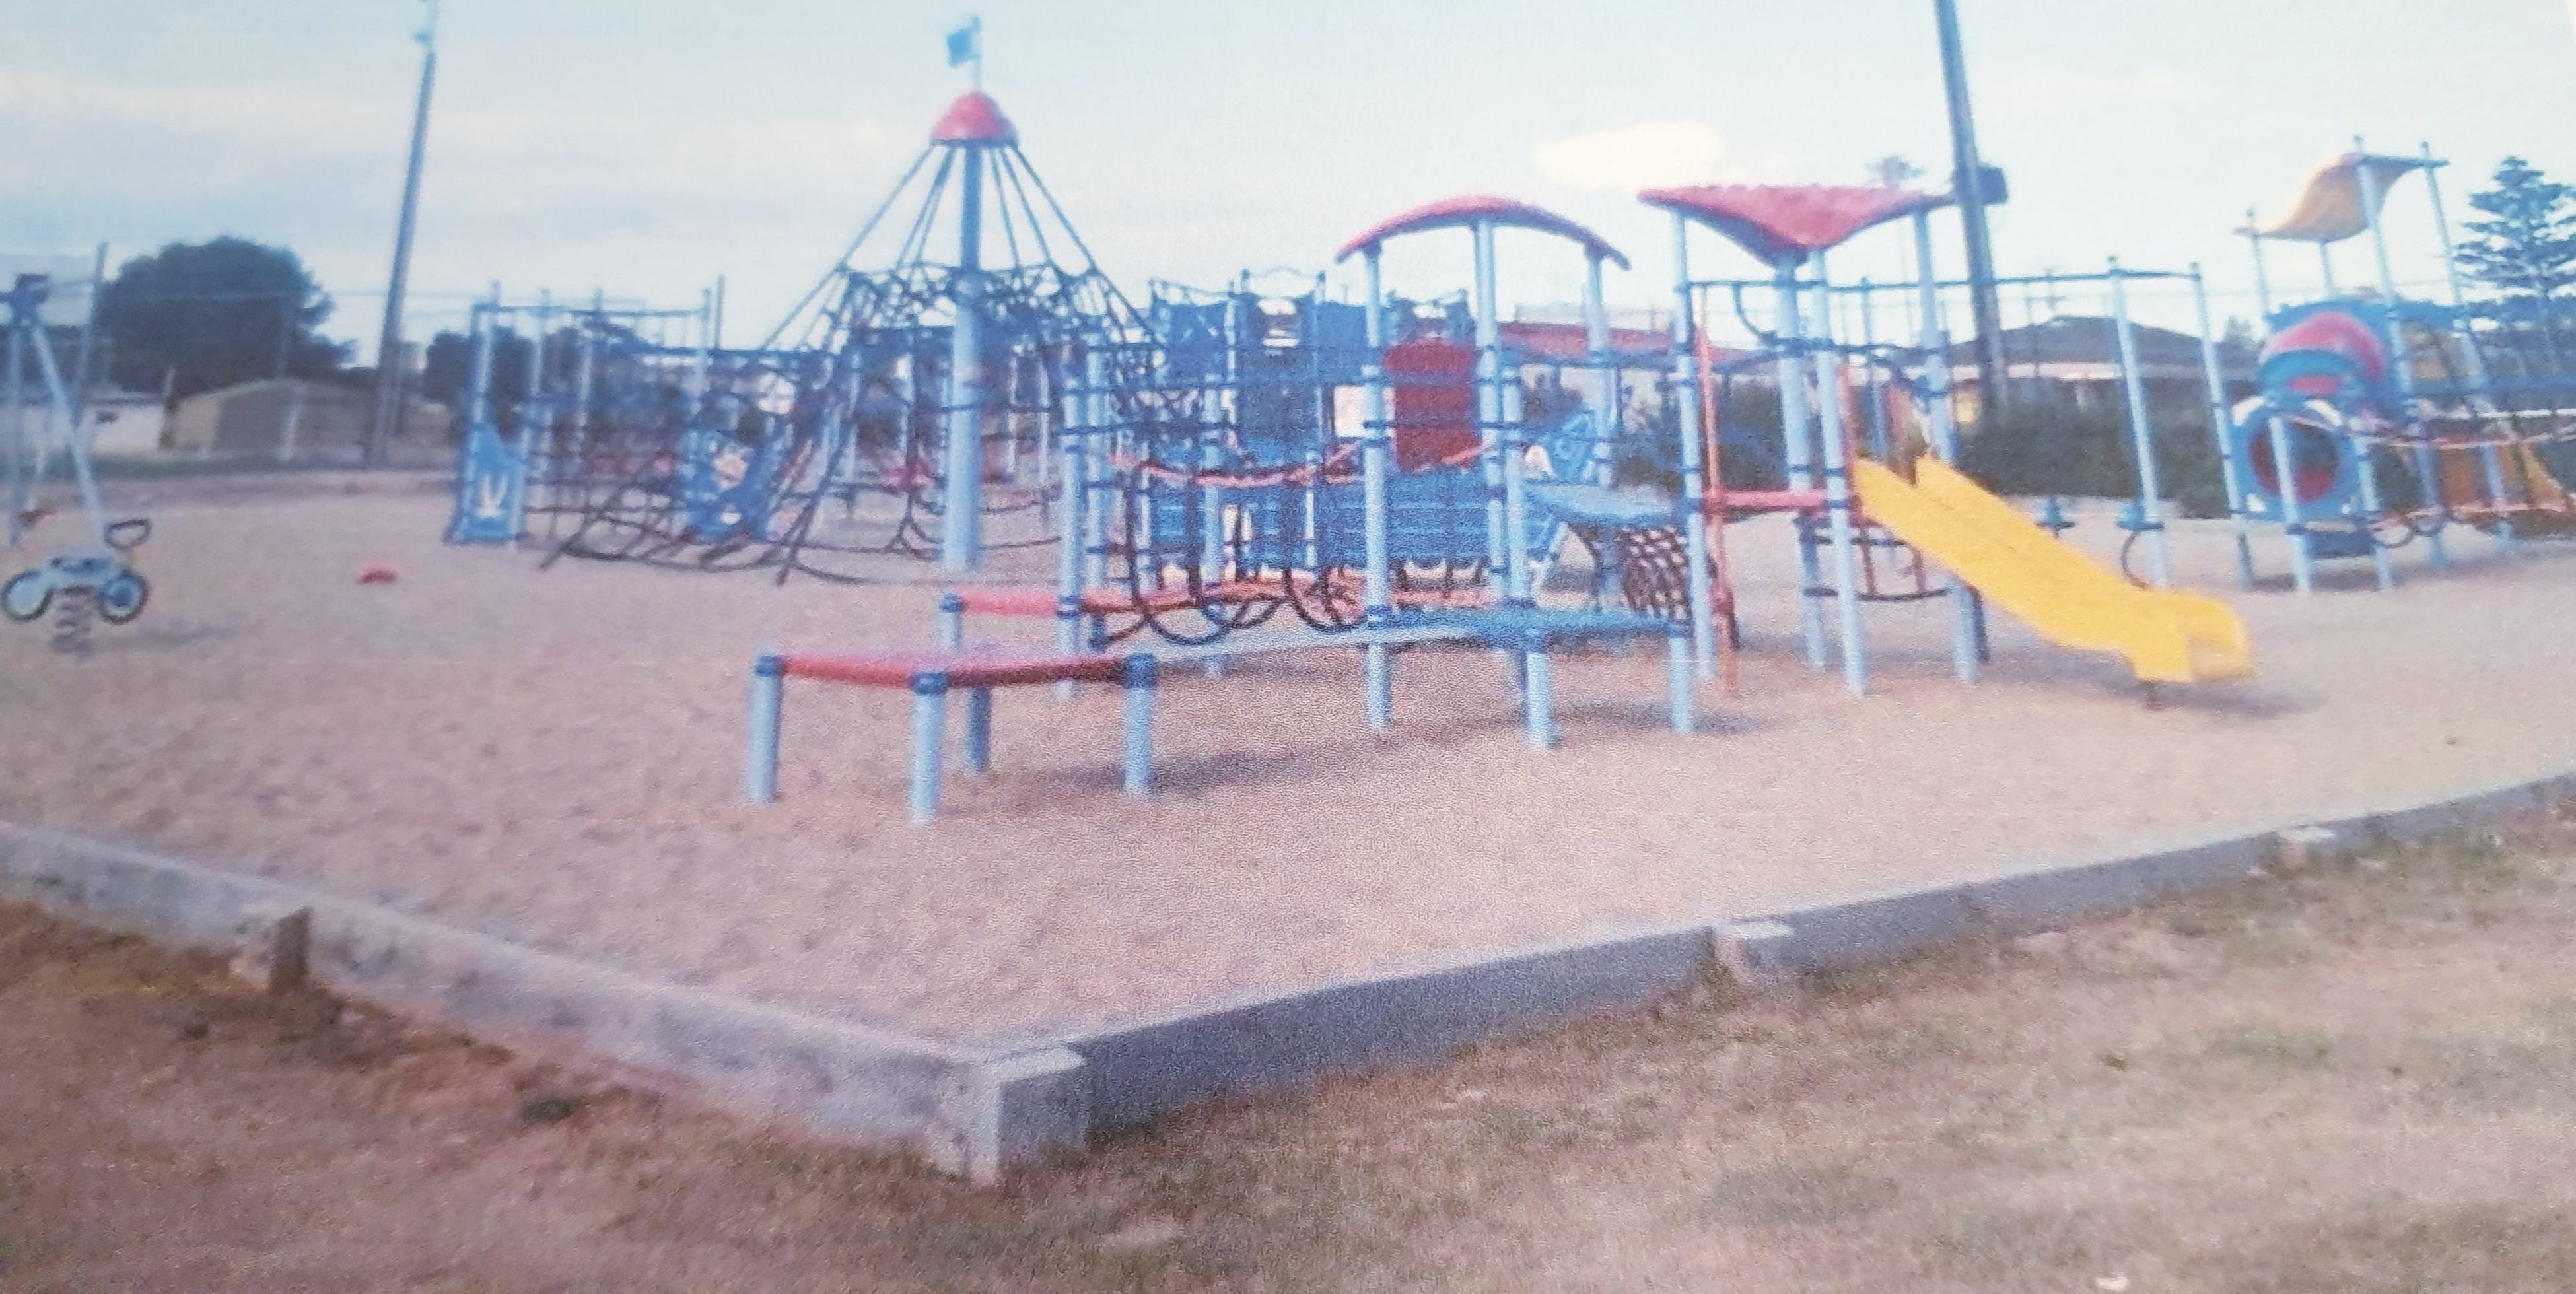 Edithburgh Playground - Accommodation Main Beach